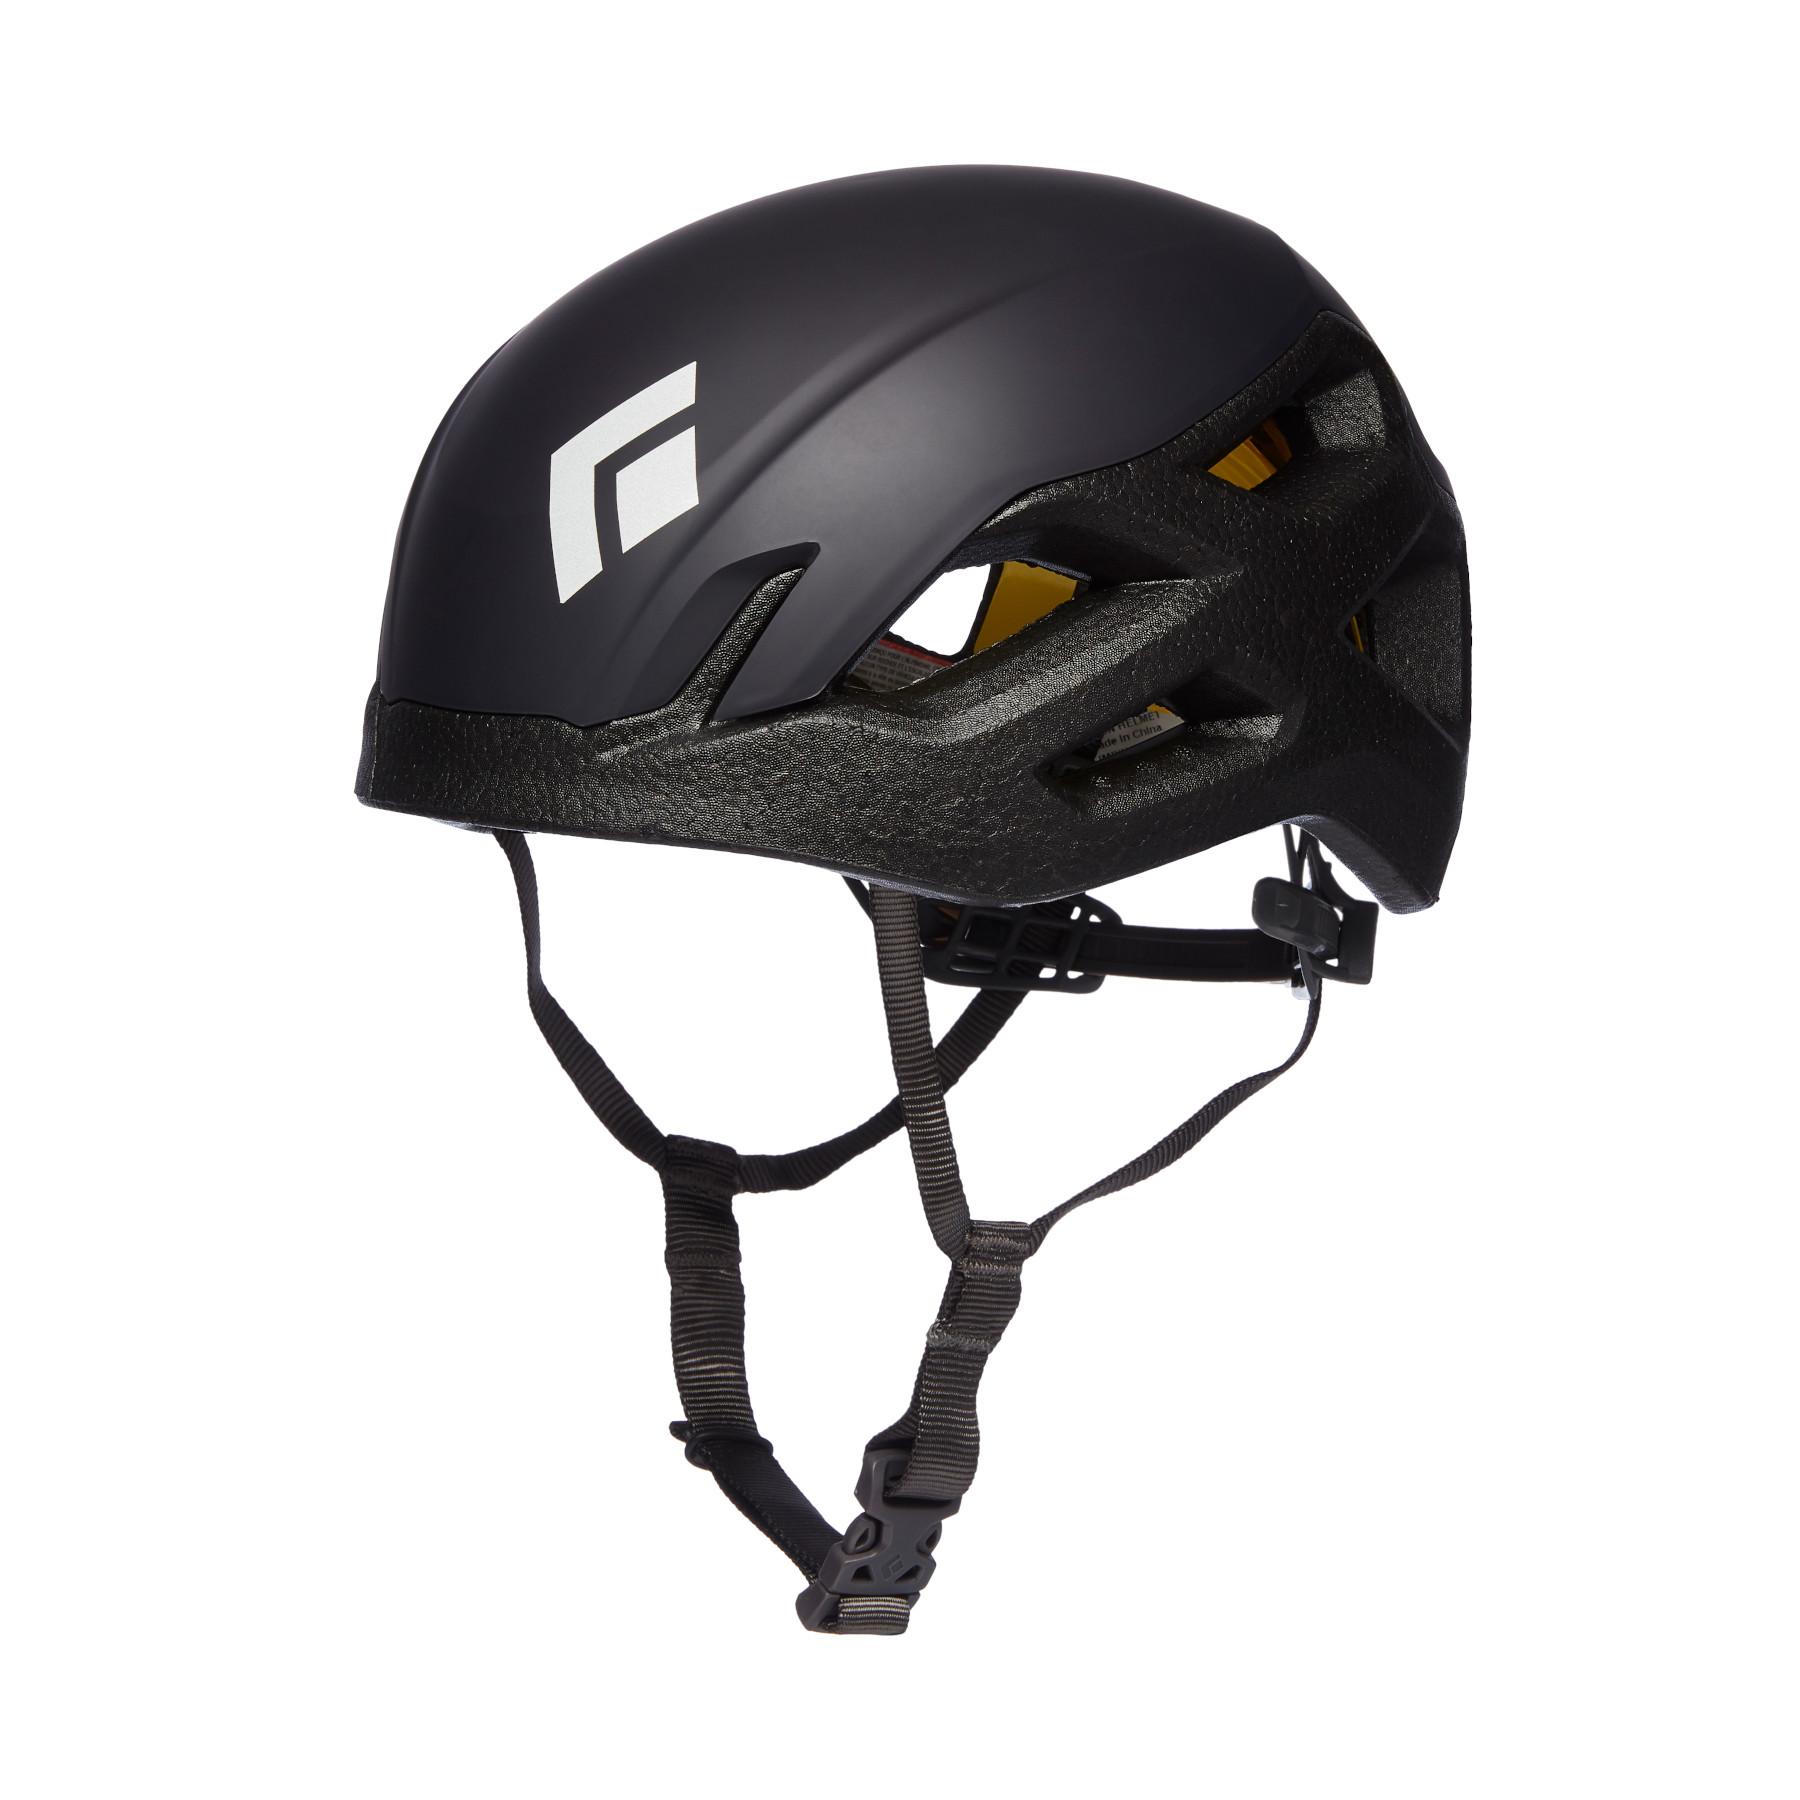 Productfoto van Black Diamond Vision MIPS Helmet - Black